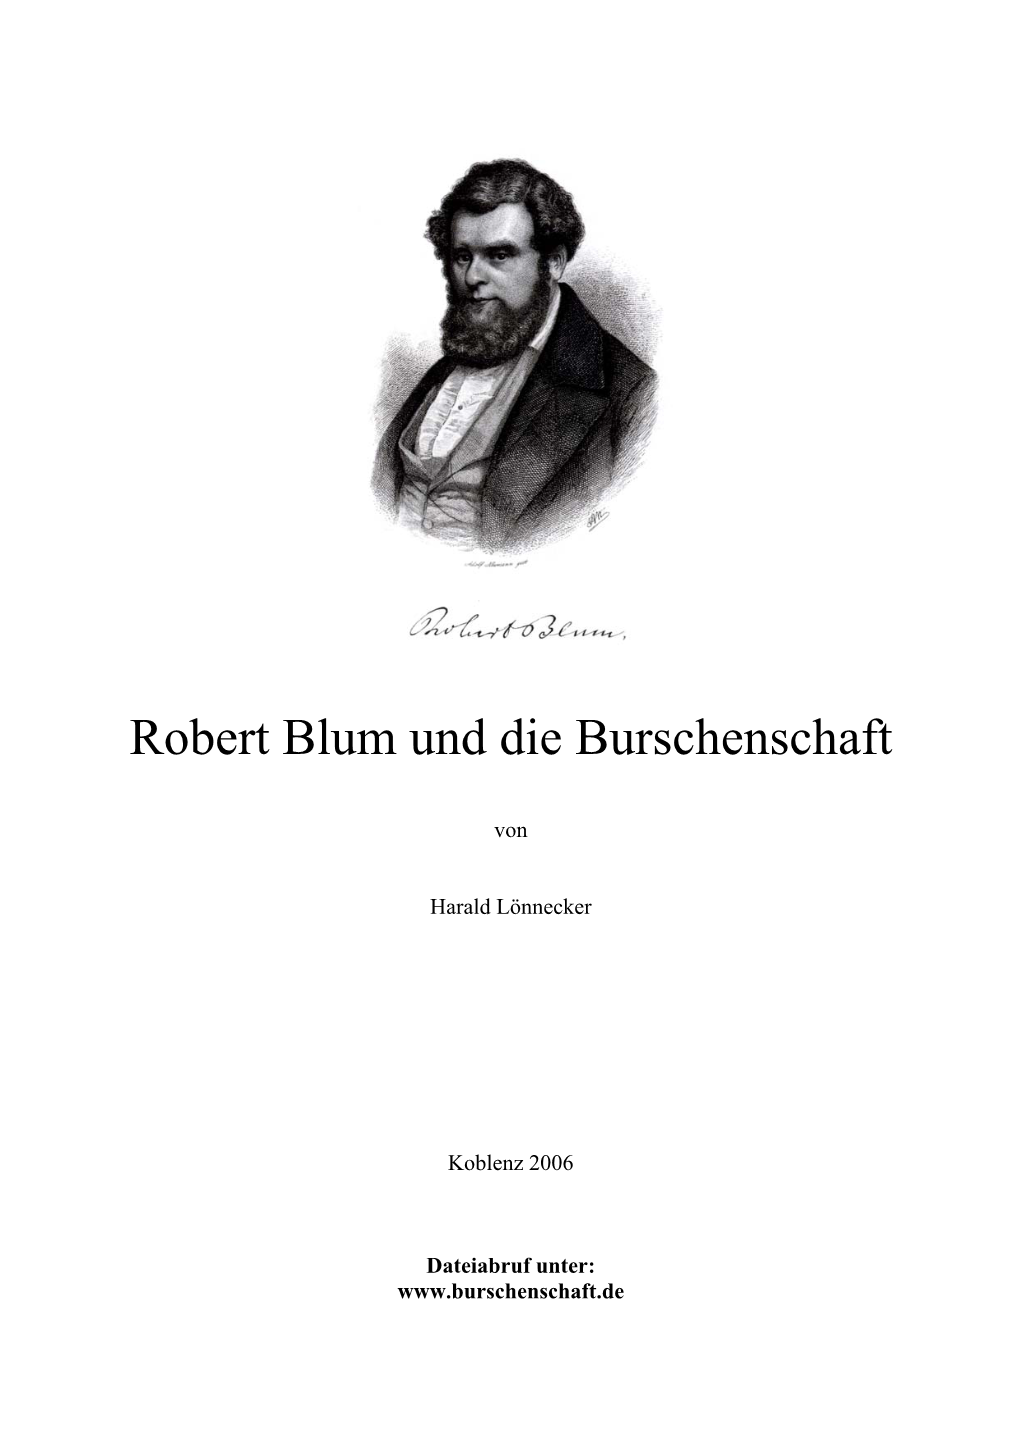 Robert Blum Und Die Burschenschaft